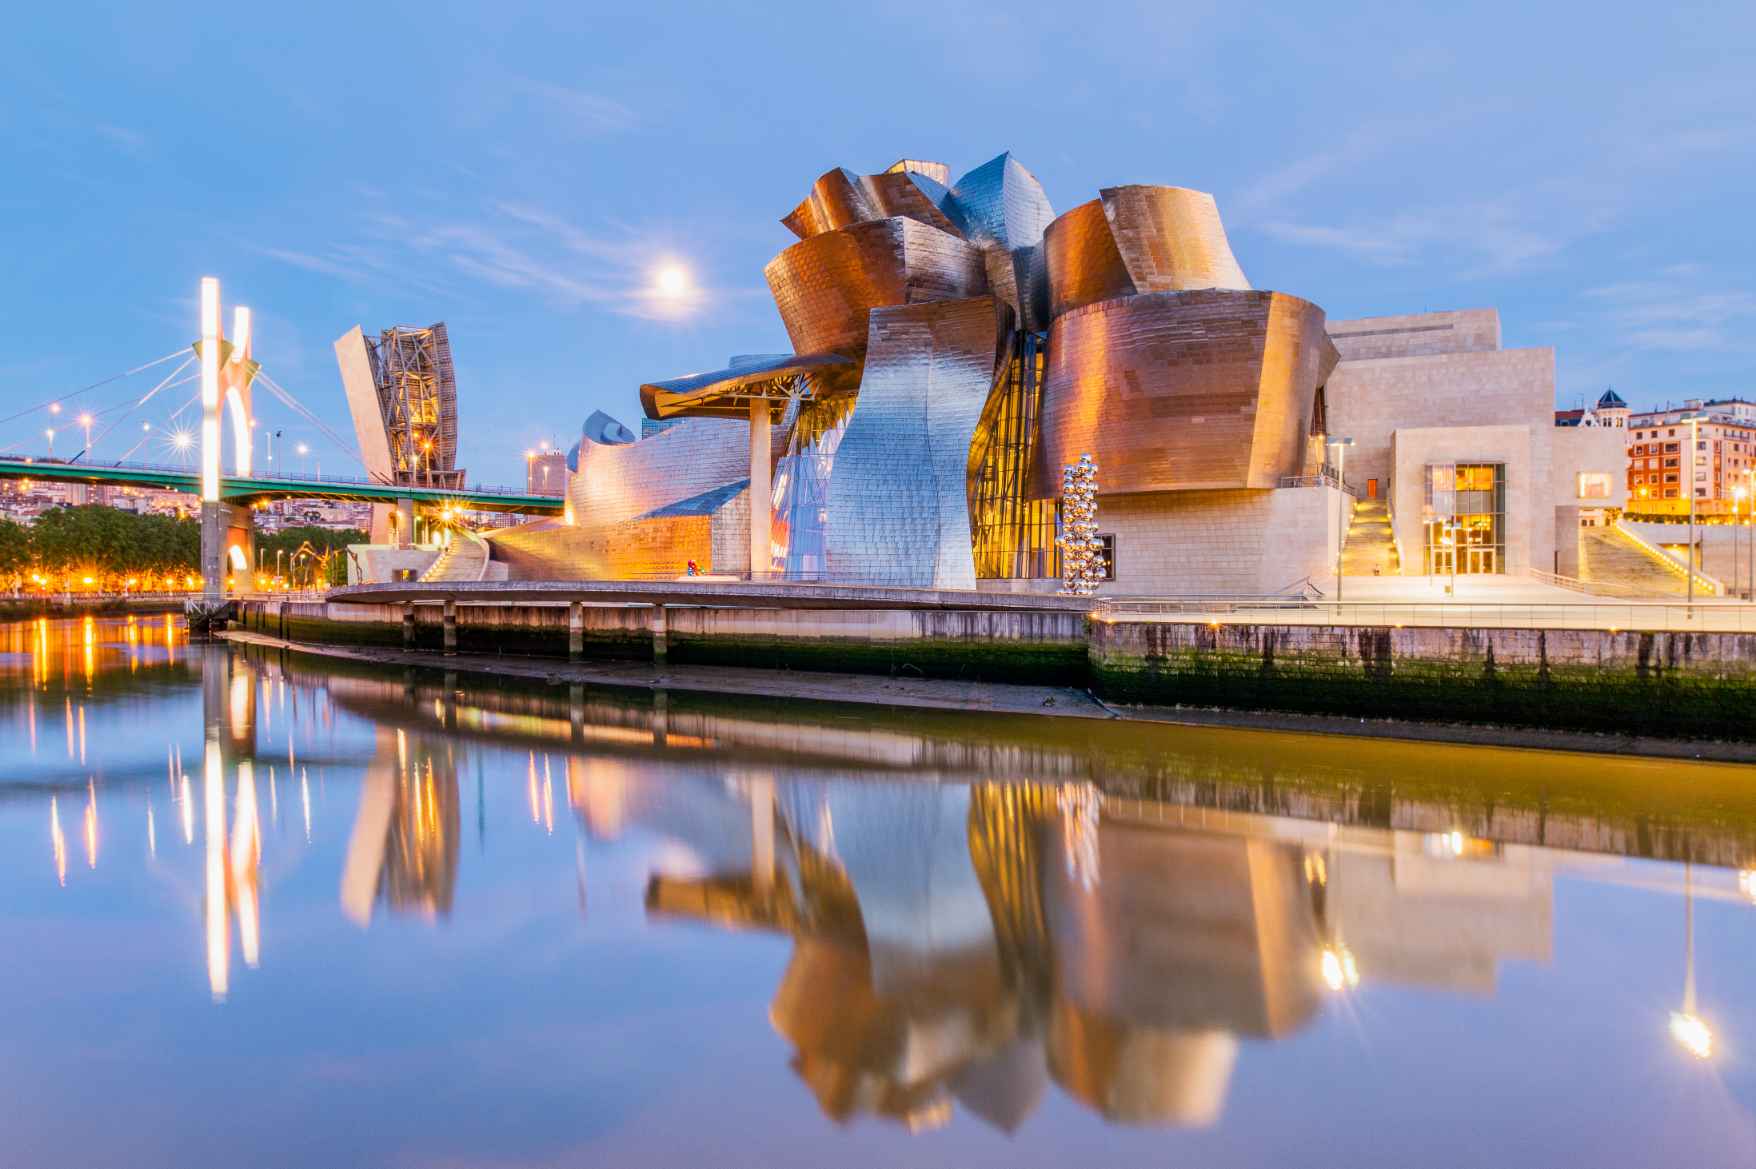 Guggenheim Museum on June 19, 2016 in Bilbao